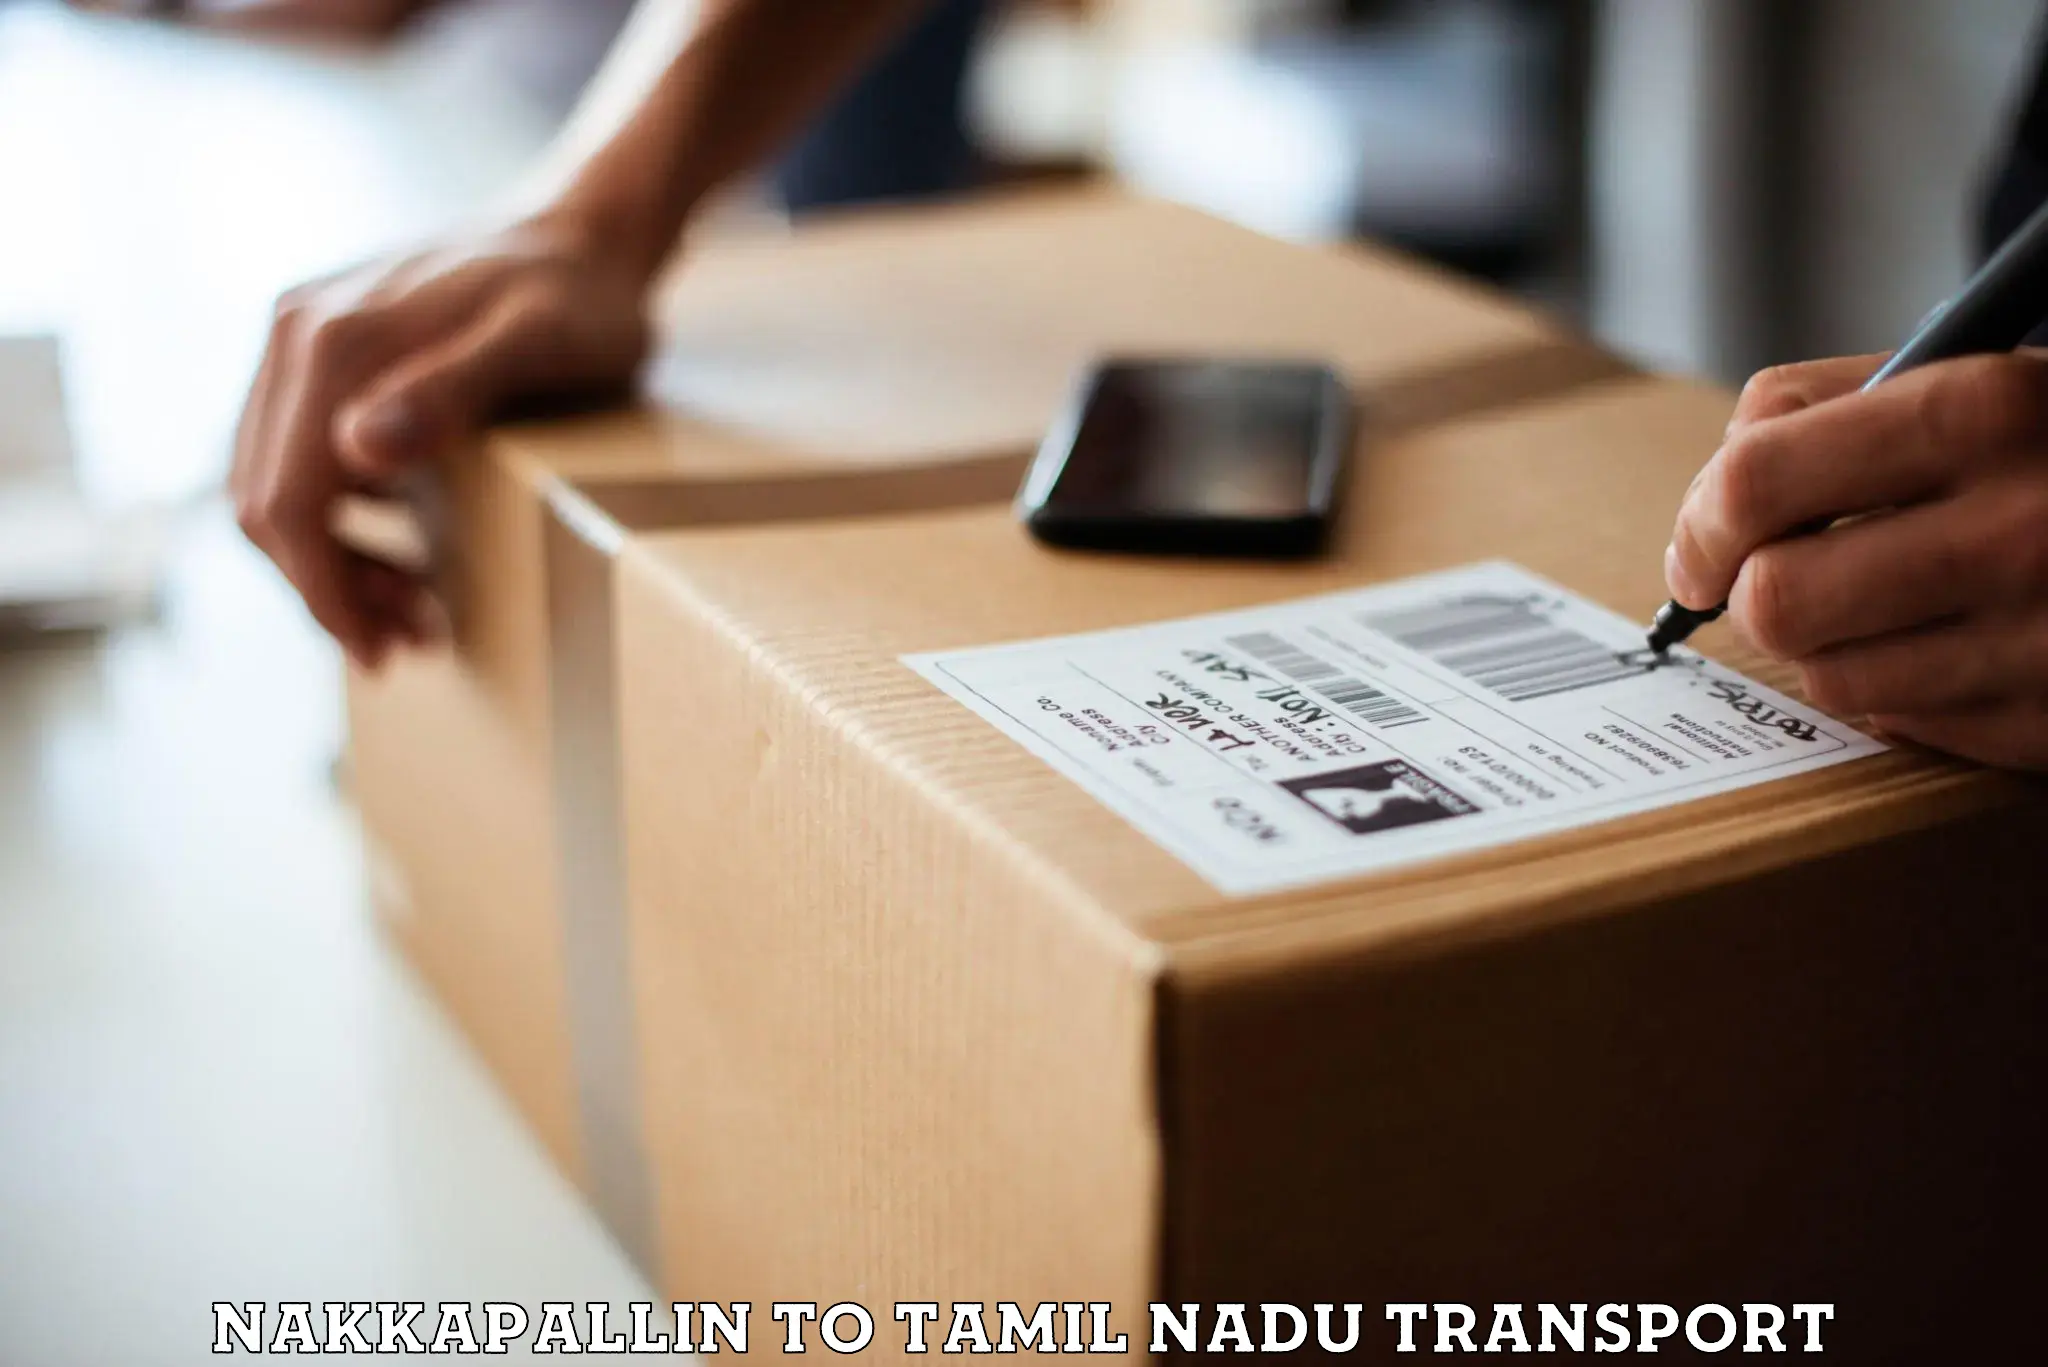 All India transport service Nakkapallin to Melmaruvathur